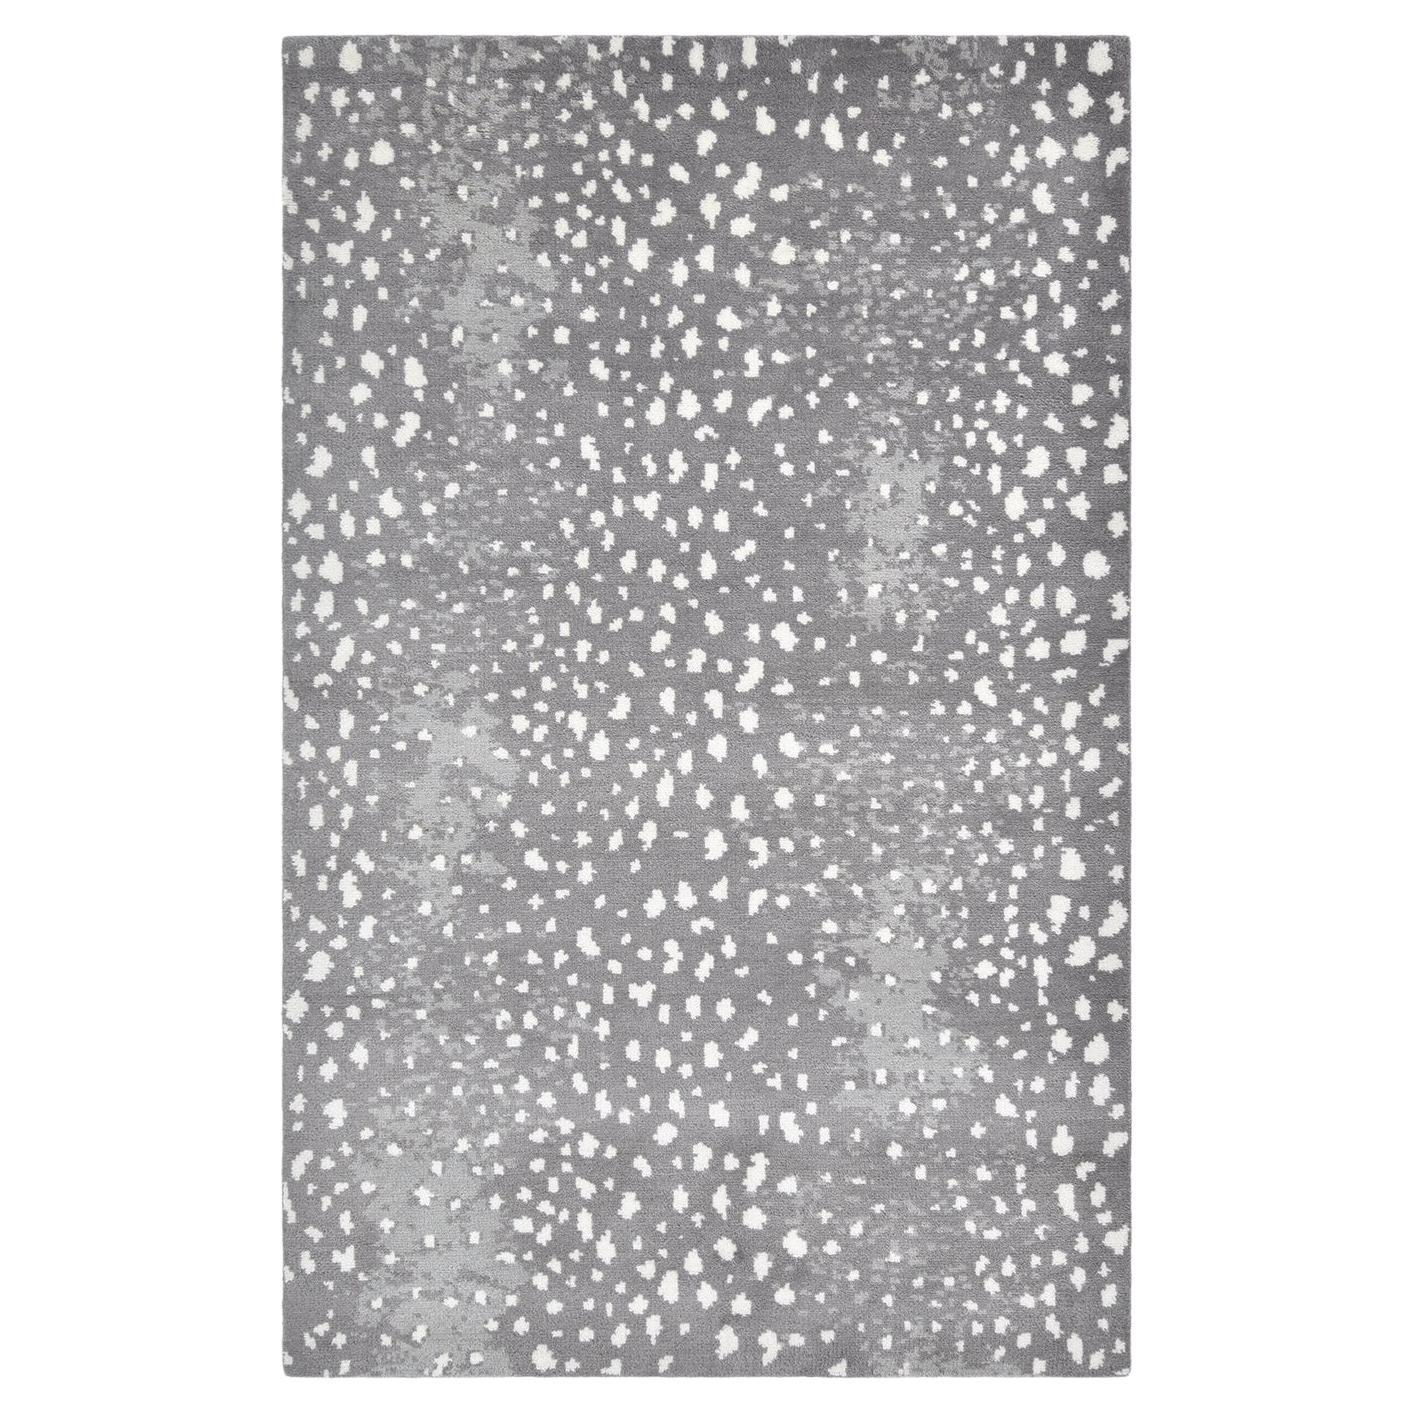 Moderner handgeknüpfter grauer 5 x 8 Teppich mit Tiermotiven